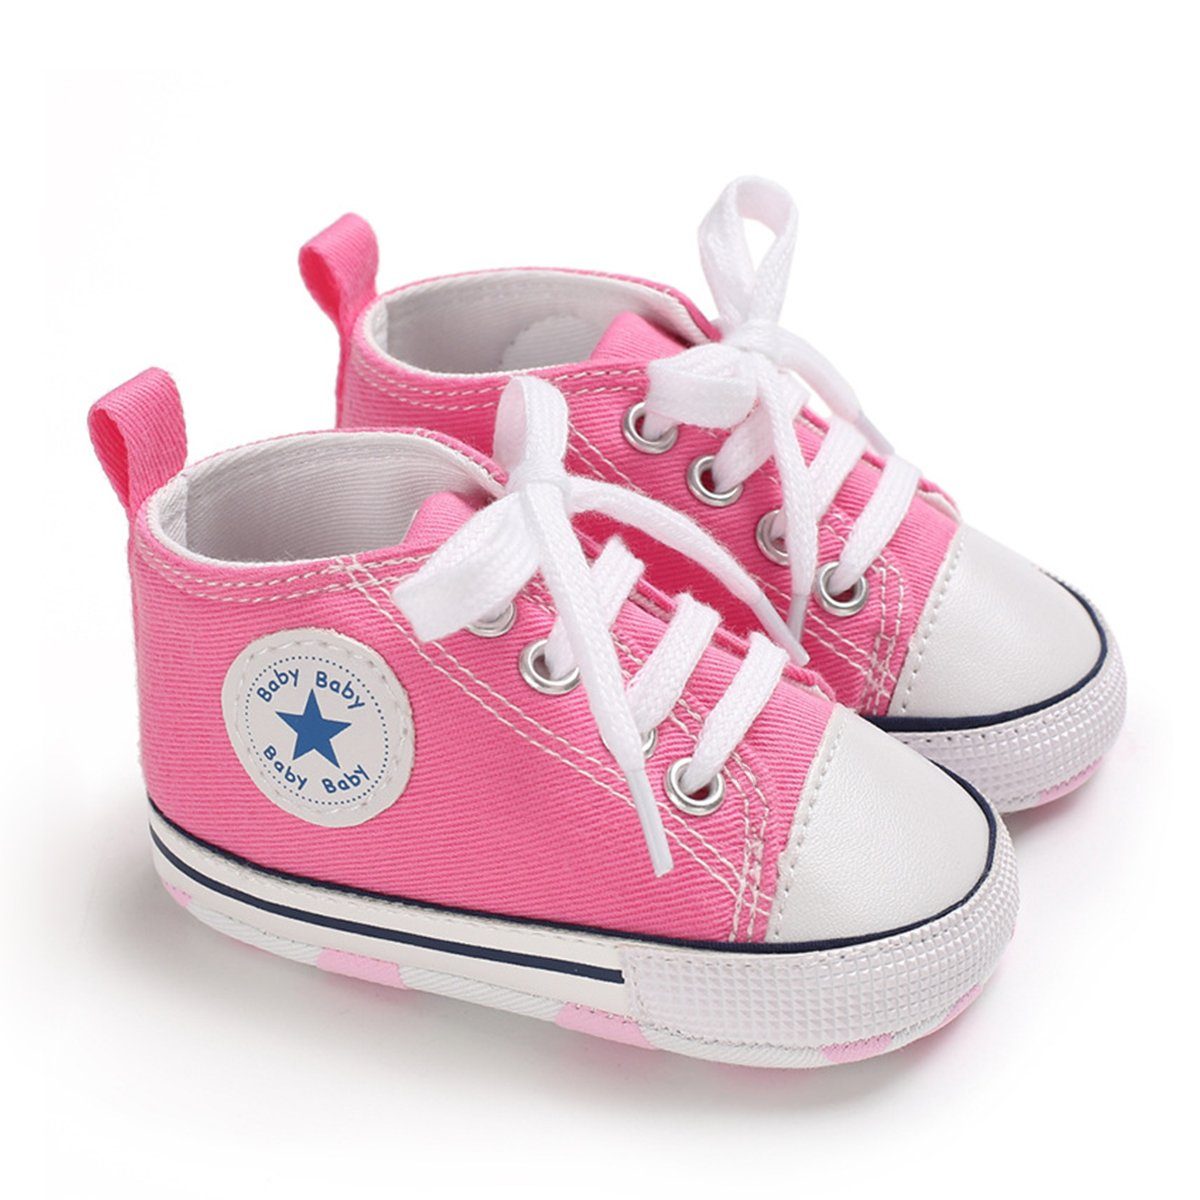 Leichtes 0-6M Baby Lauflernschuhe Sohle Babystiefel Schuhe DEBAIJIA Pink DEBAIJIA Leinen Weiche